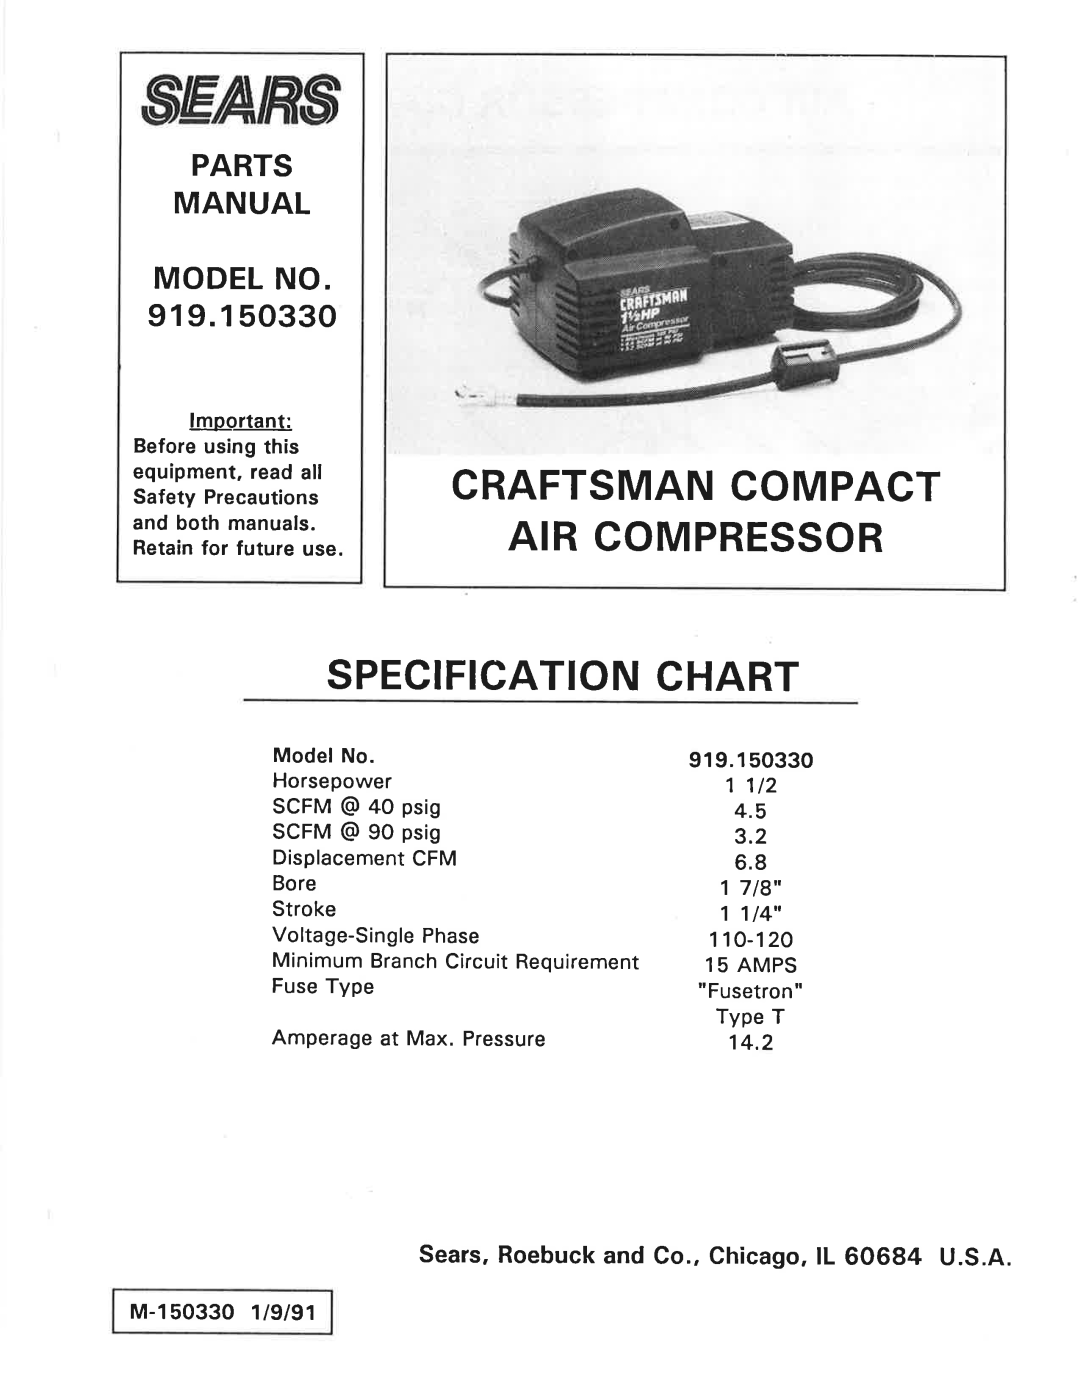 Sears 919.15033 manual 